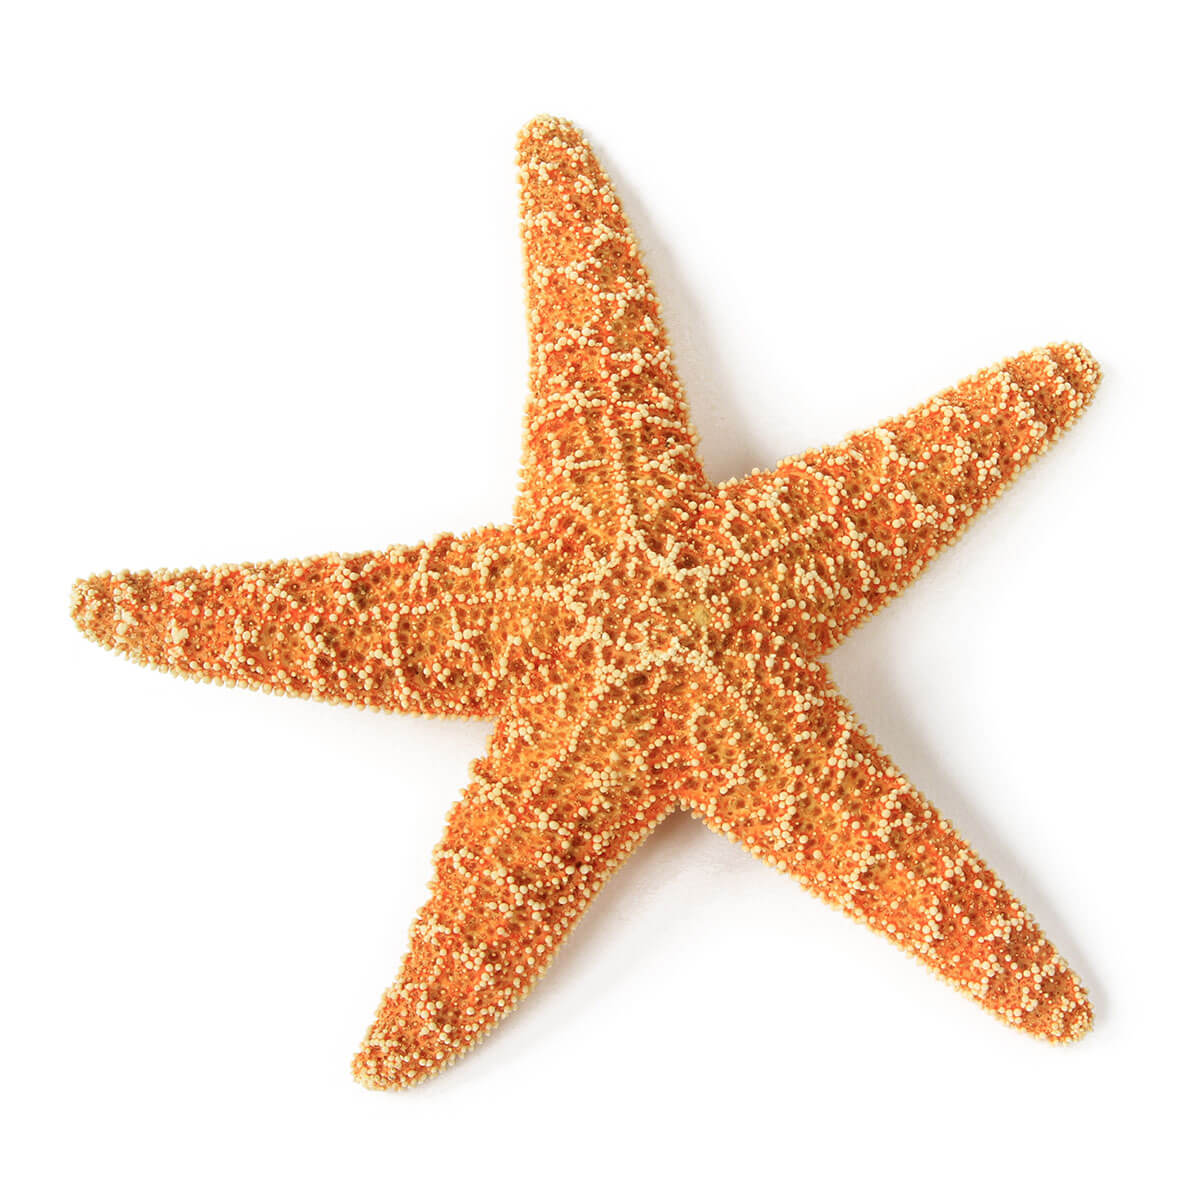 Lone Starfish